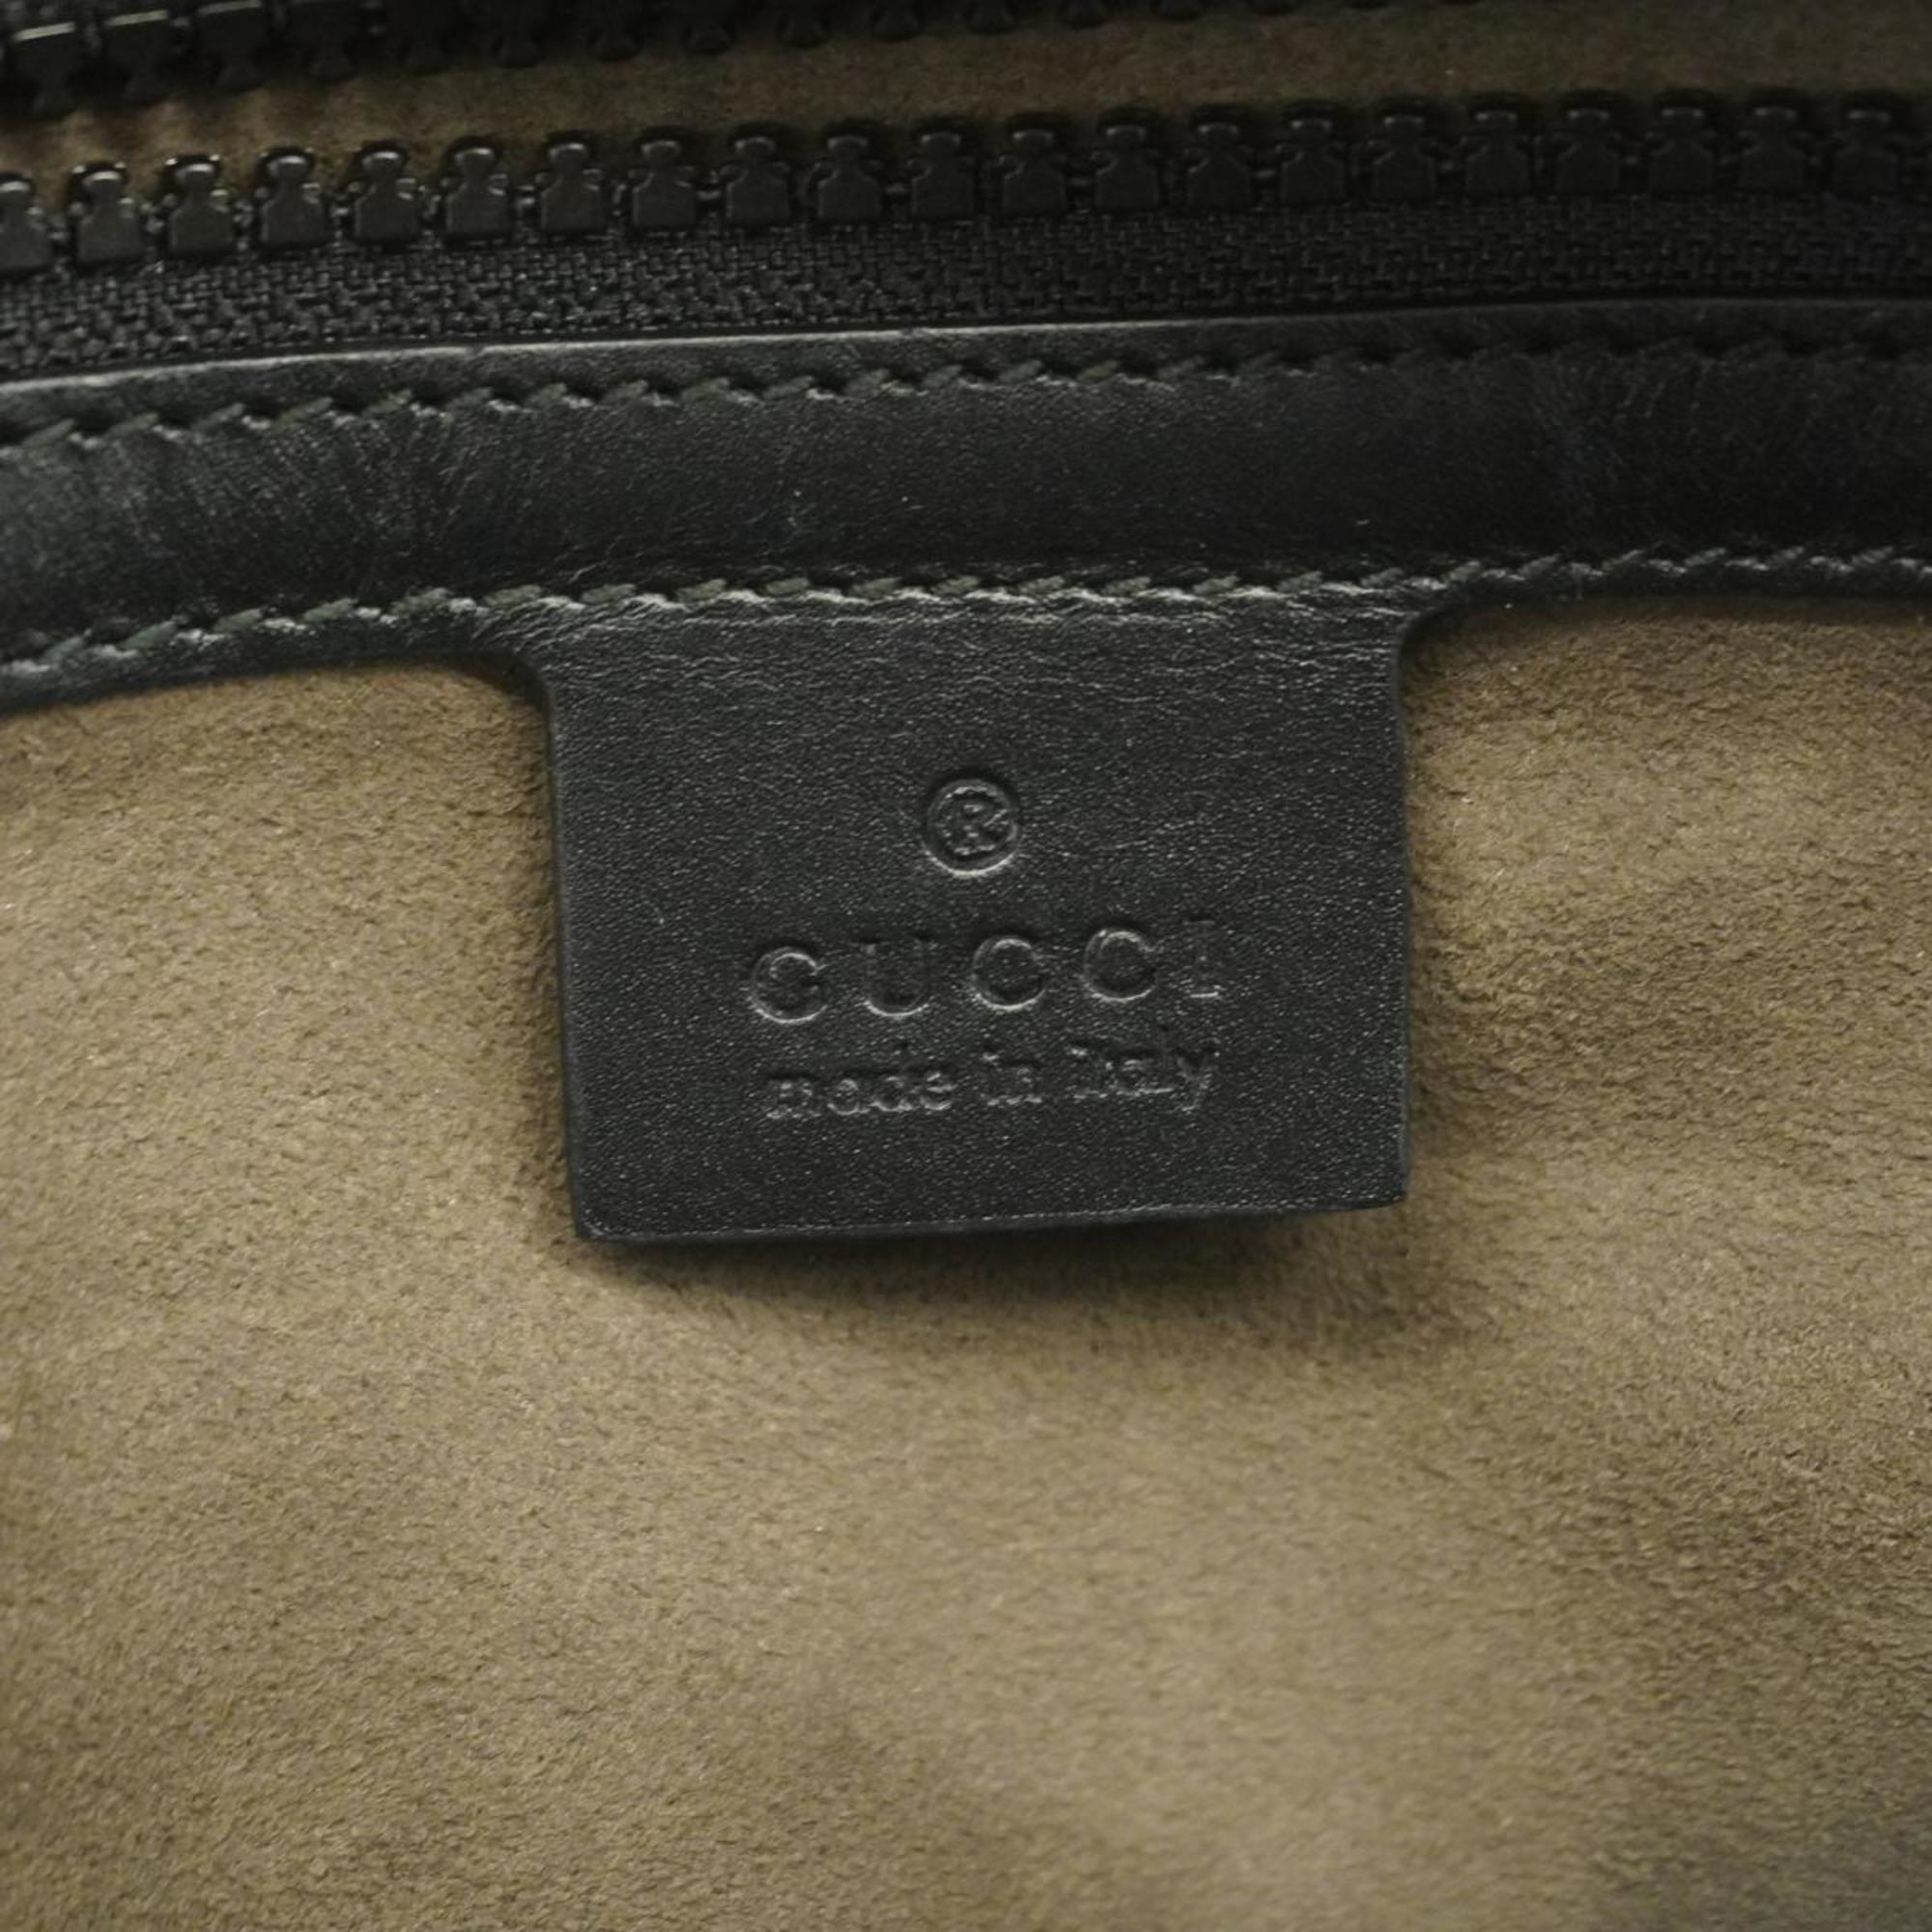 グッチ(Gucci) グッチ リュックサック GGスプリーム 429020  レザー ブラック ベージュ   メンズ レディース